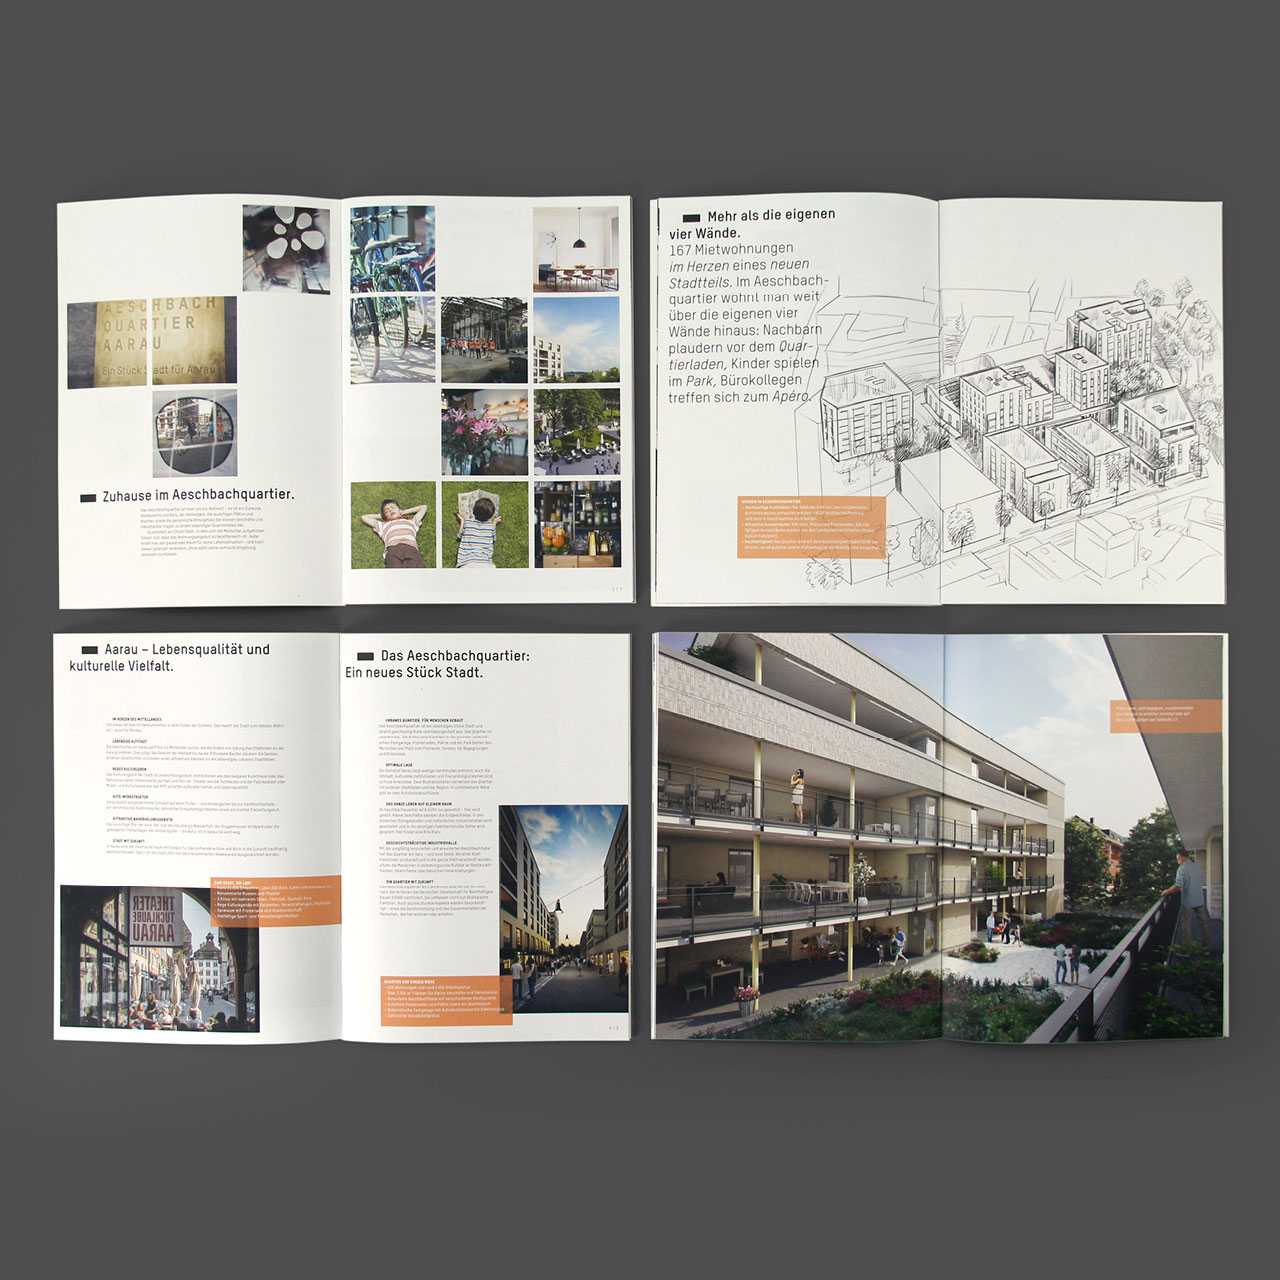 Aeschbachquartier Aarau by Mobimo AG: Corporate Design und Gesamtkommunikation